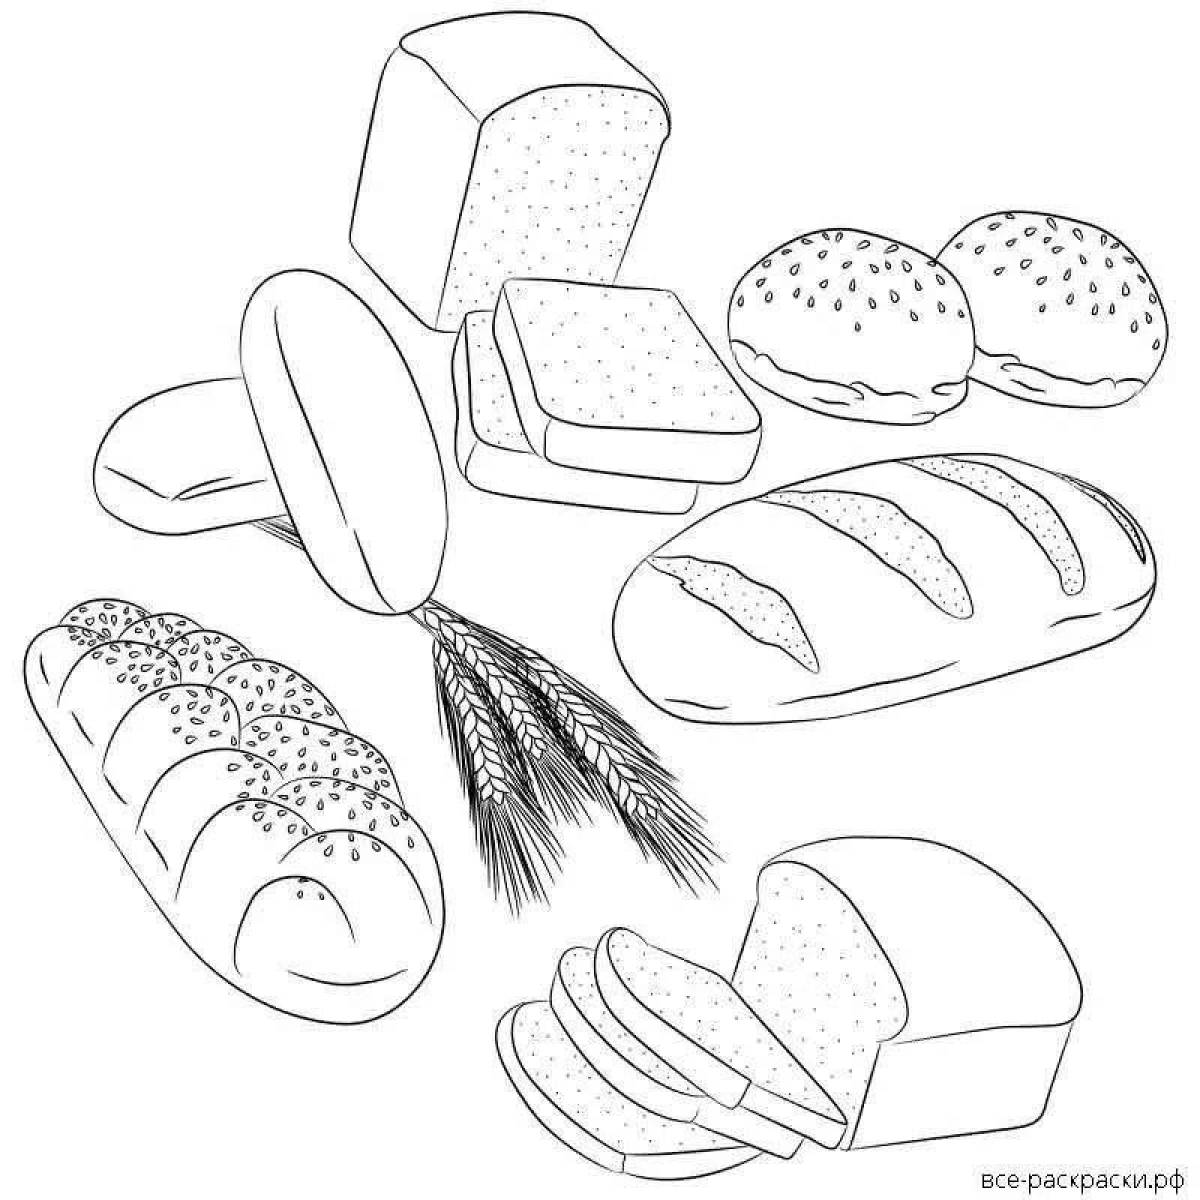 Хлеб раскраска: векторные изображения и иллюстрации, которые можно скачать бесплатно | Freepik